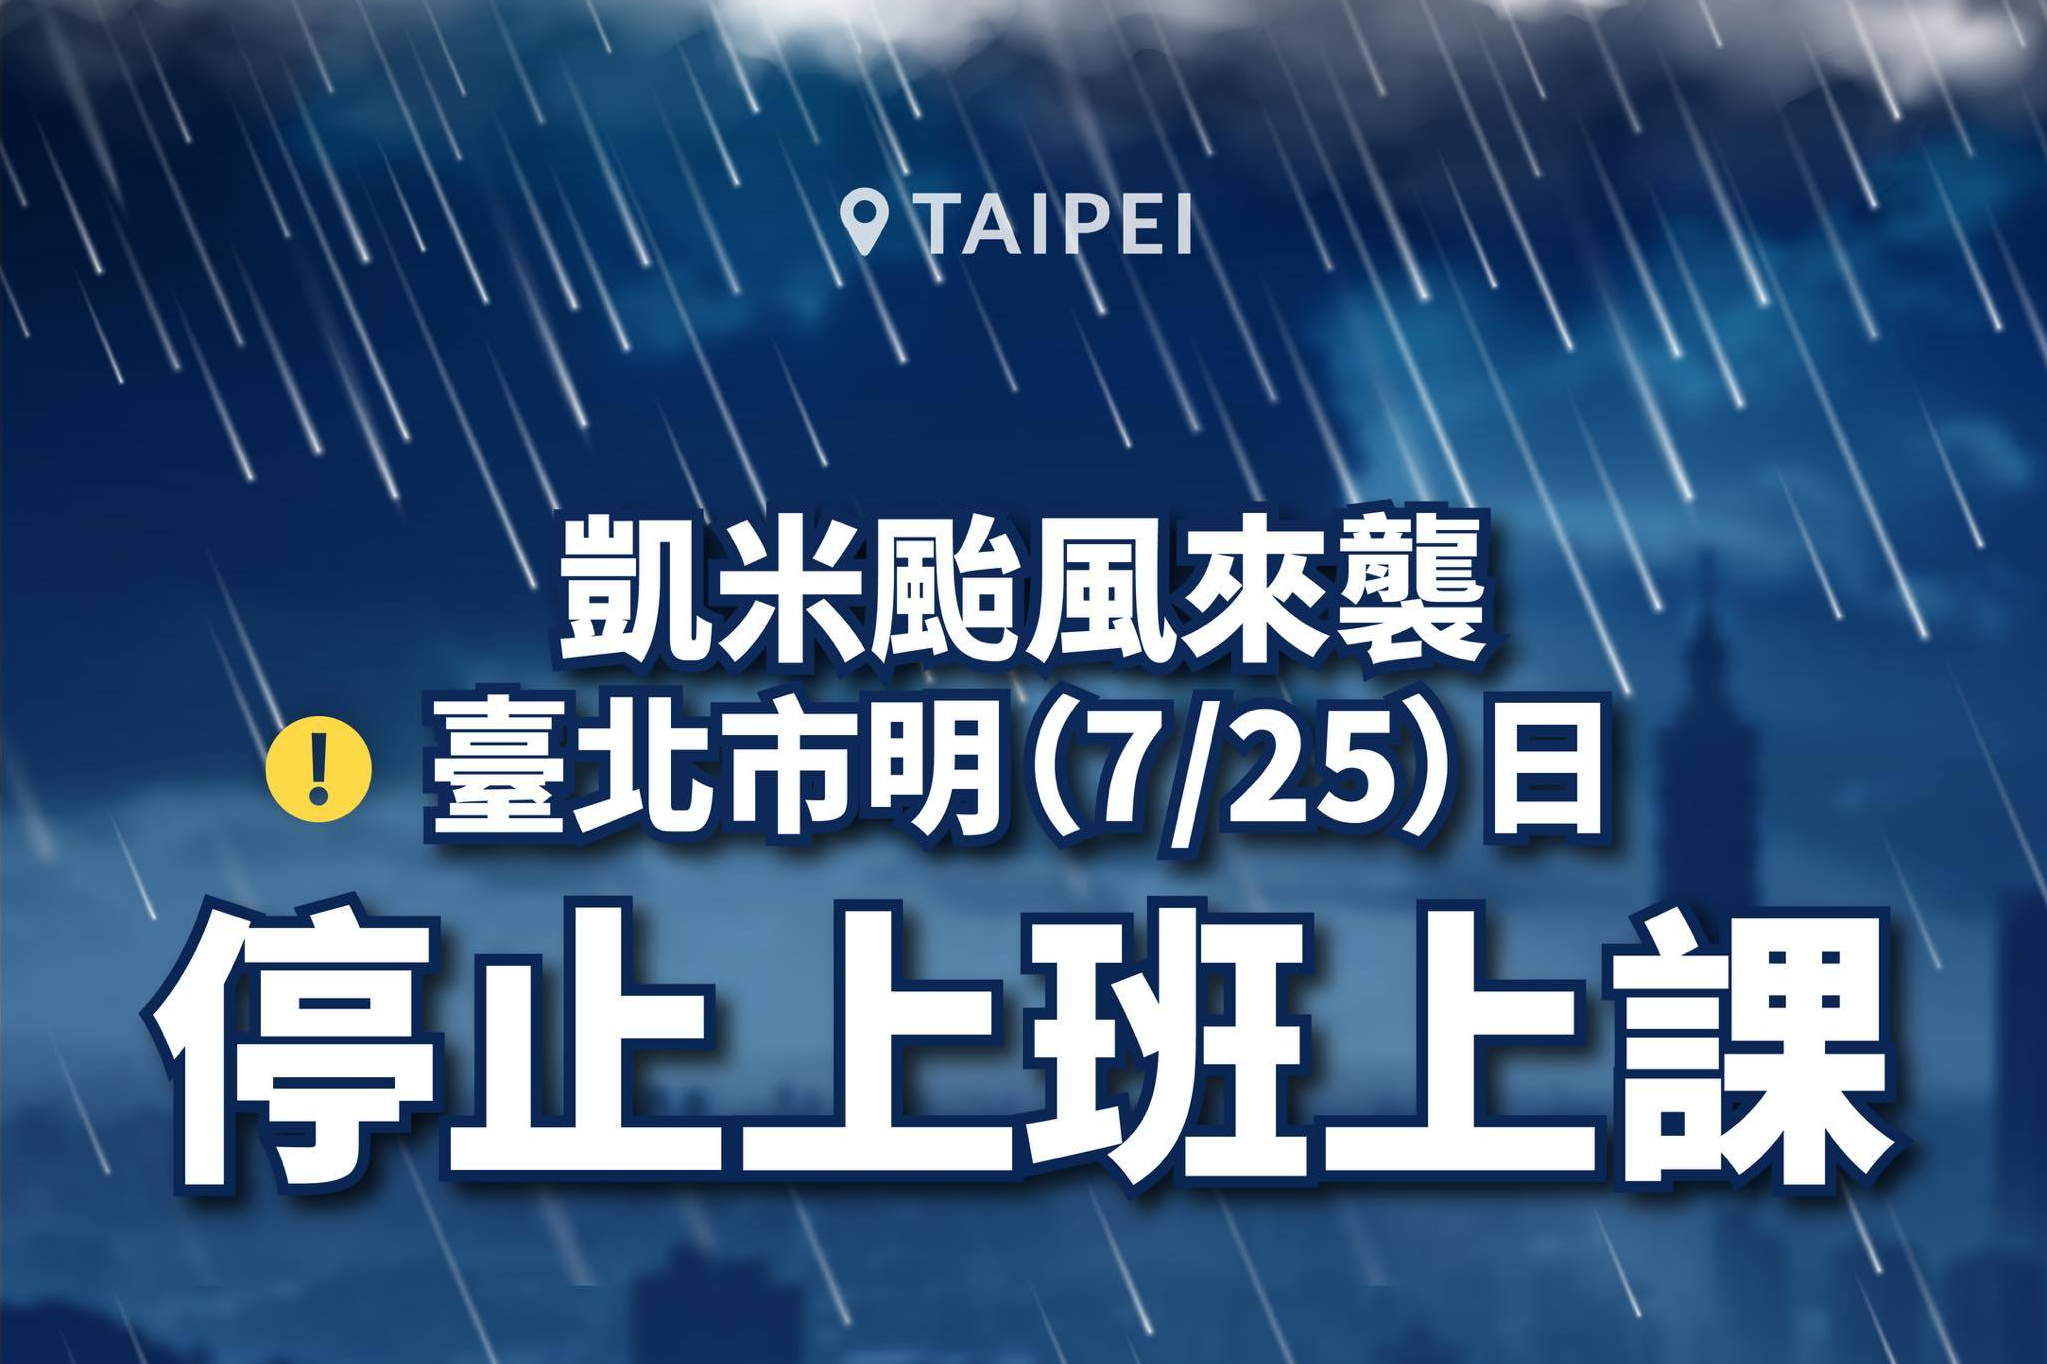 凱米颱風來襲，臺北市宣布7/25停止上班上課